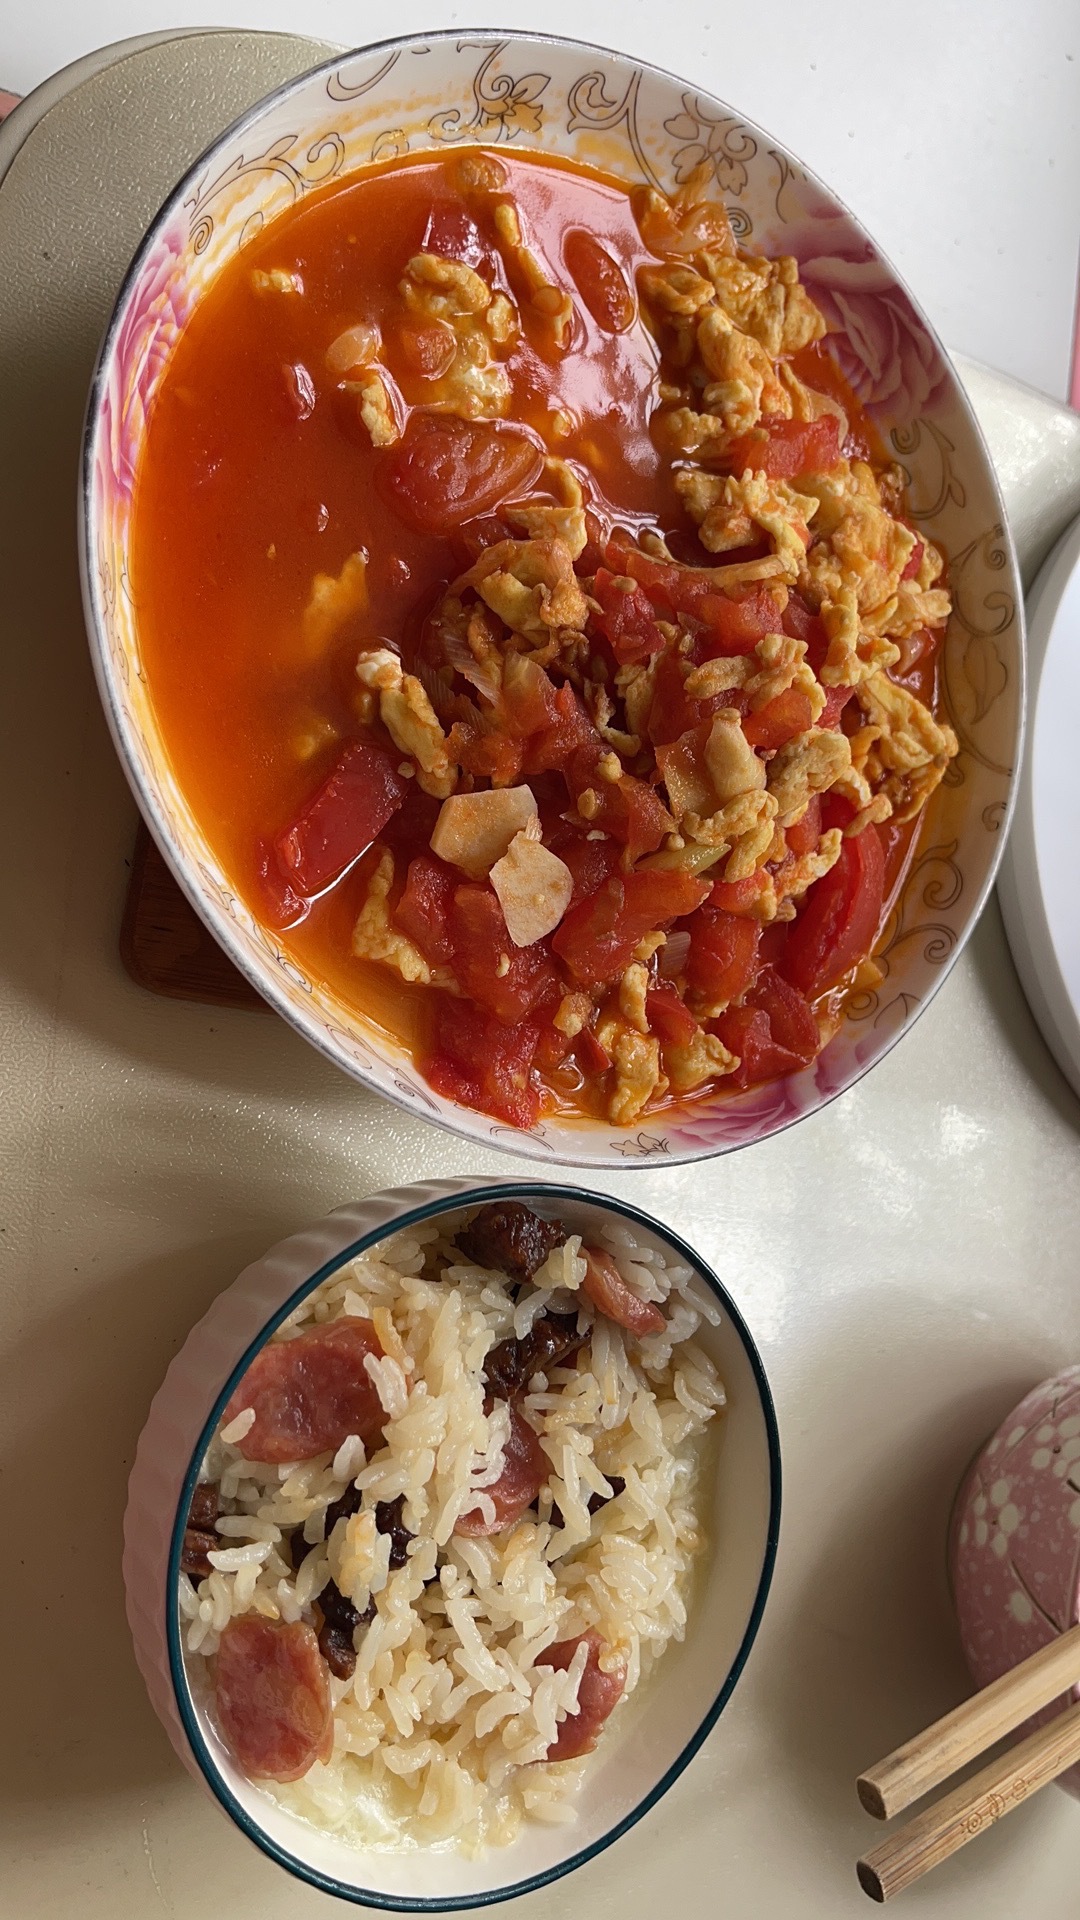 午餐晚餐家常菜浓郁西红柿炒鸡蛋🍅番茄炒蛋